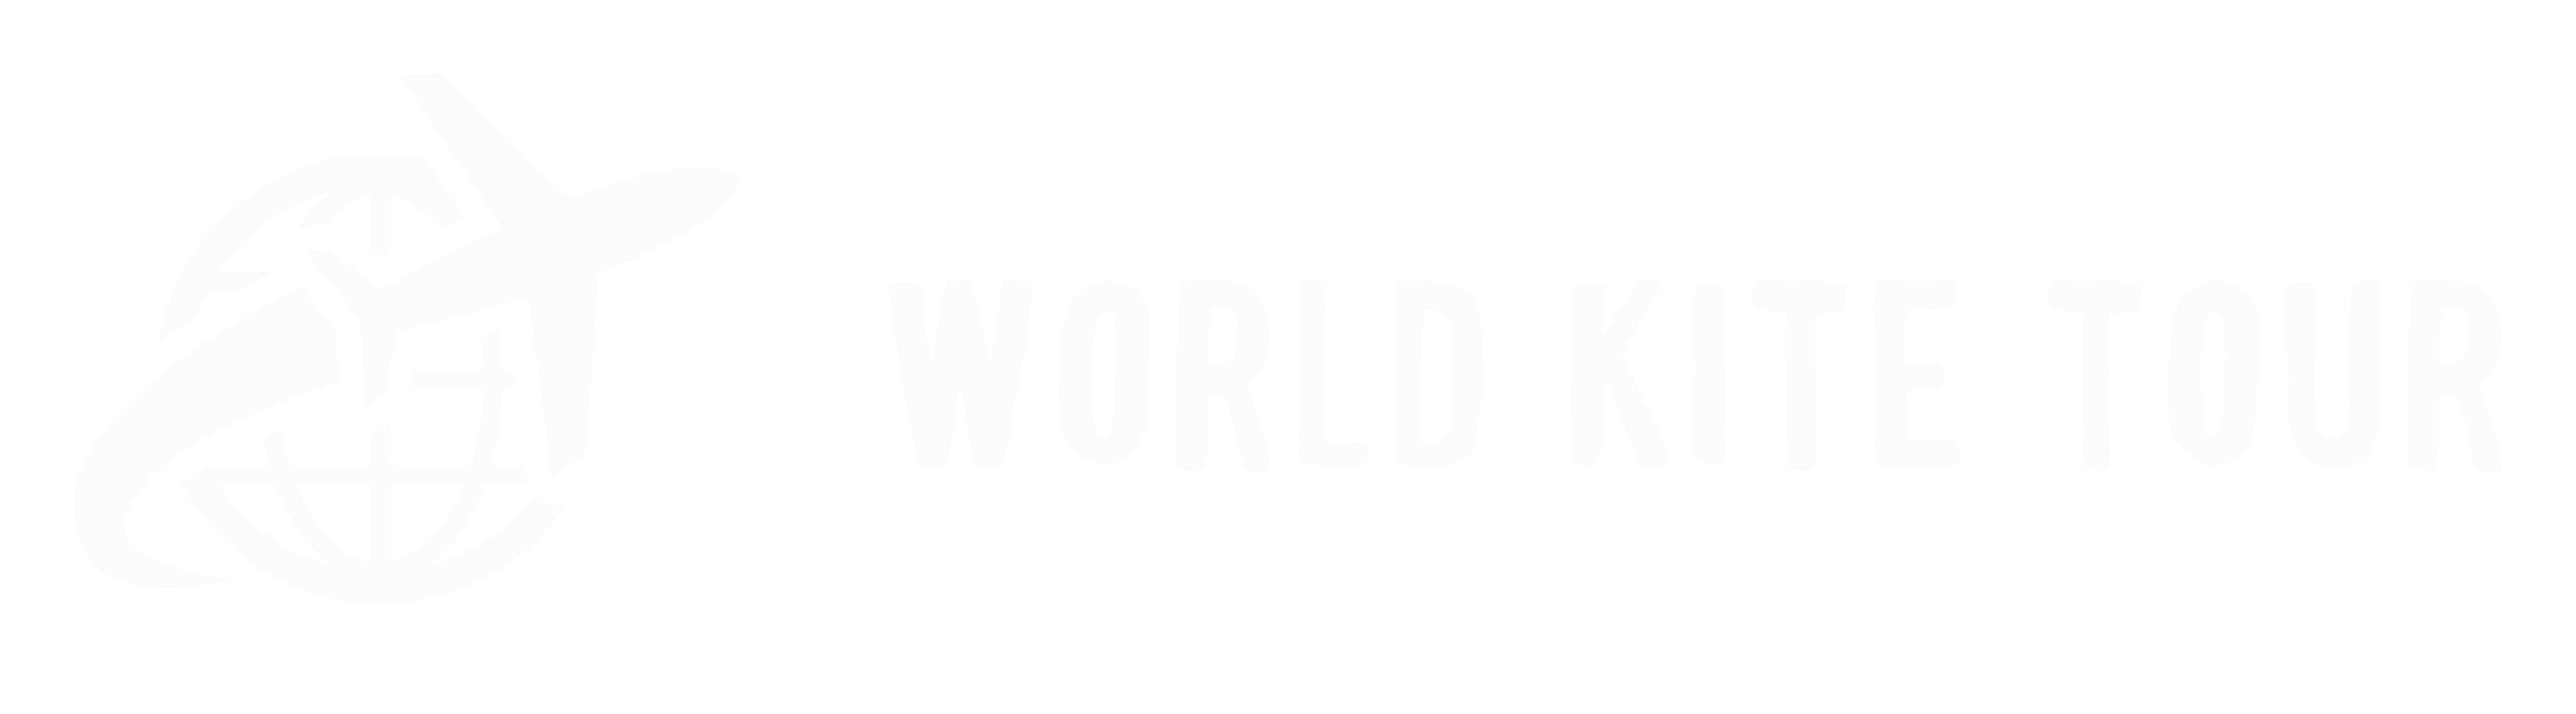 World Kite Tour